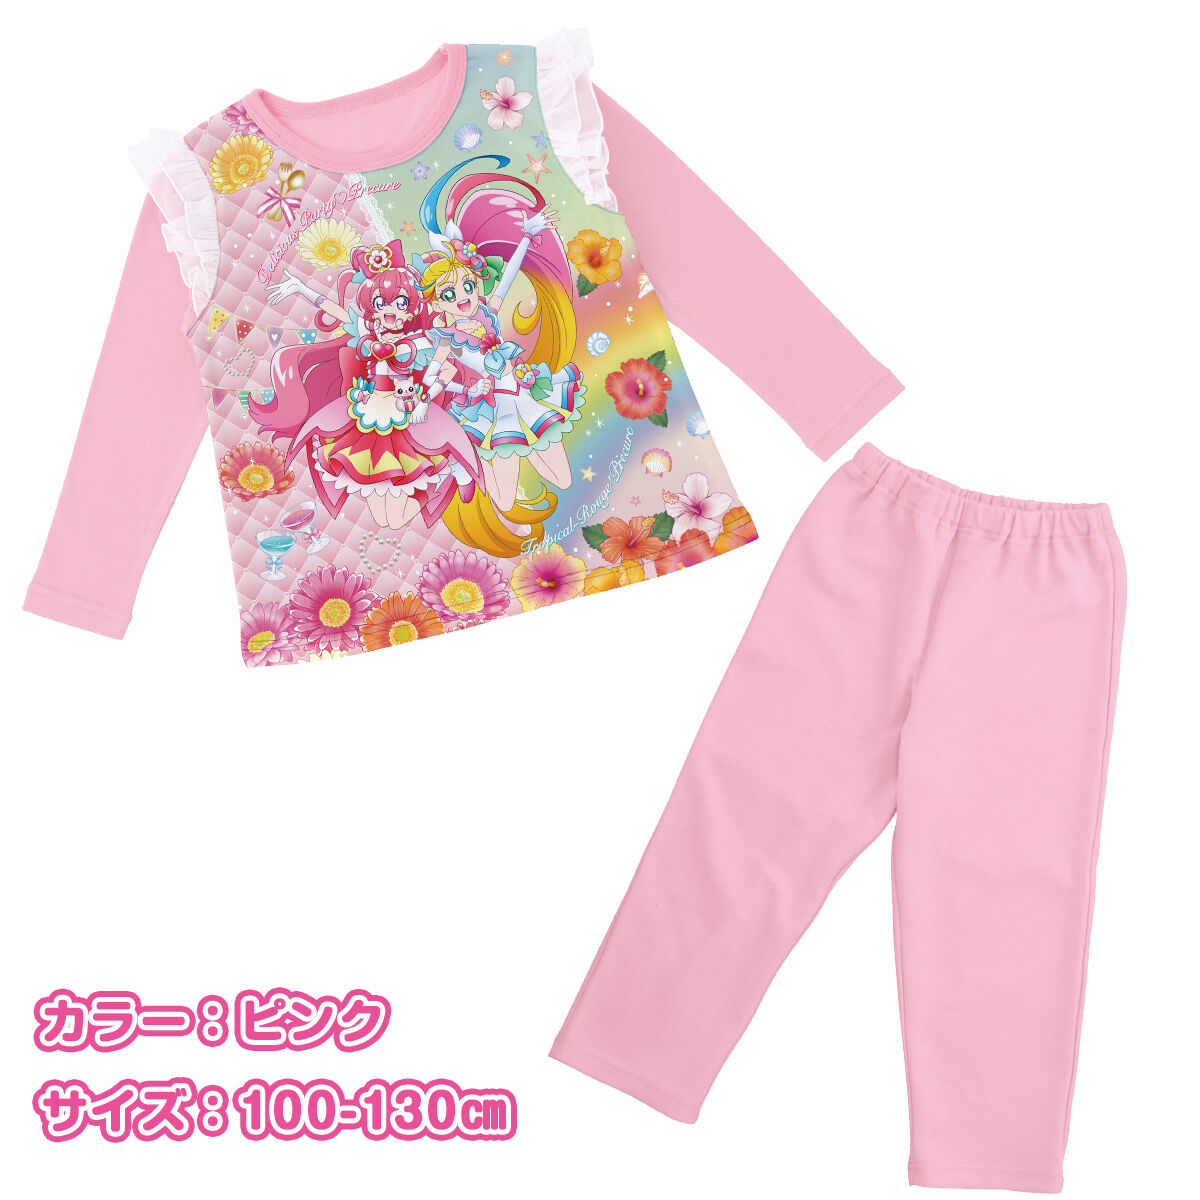 デリシャスパーティープリキュア パジャマ 上のみ 110cm ピンク色